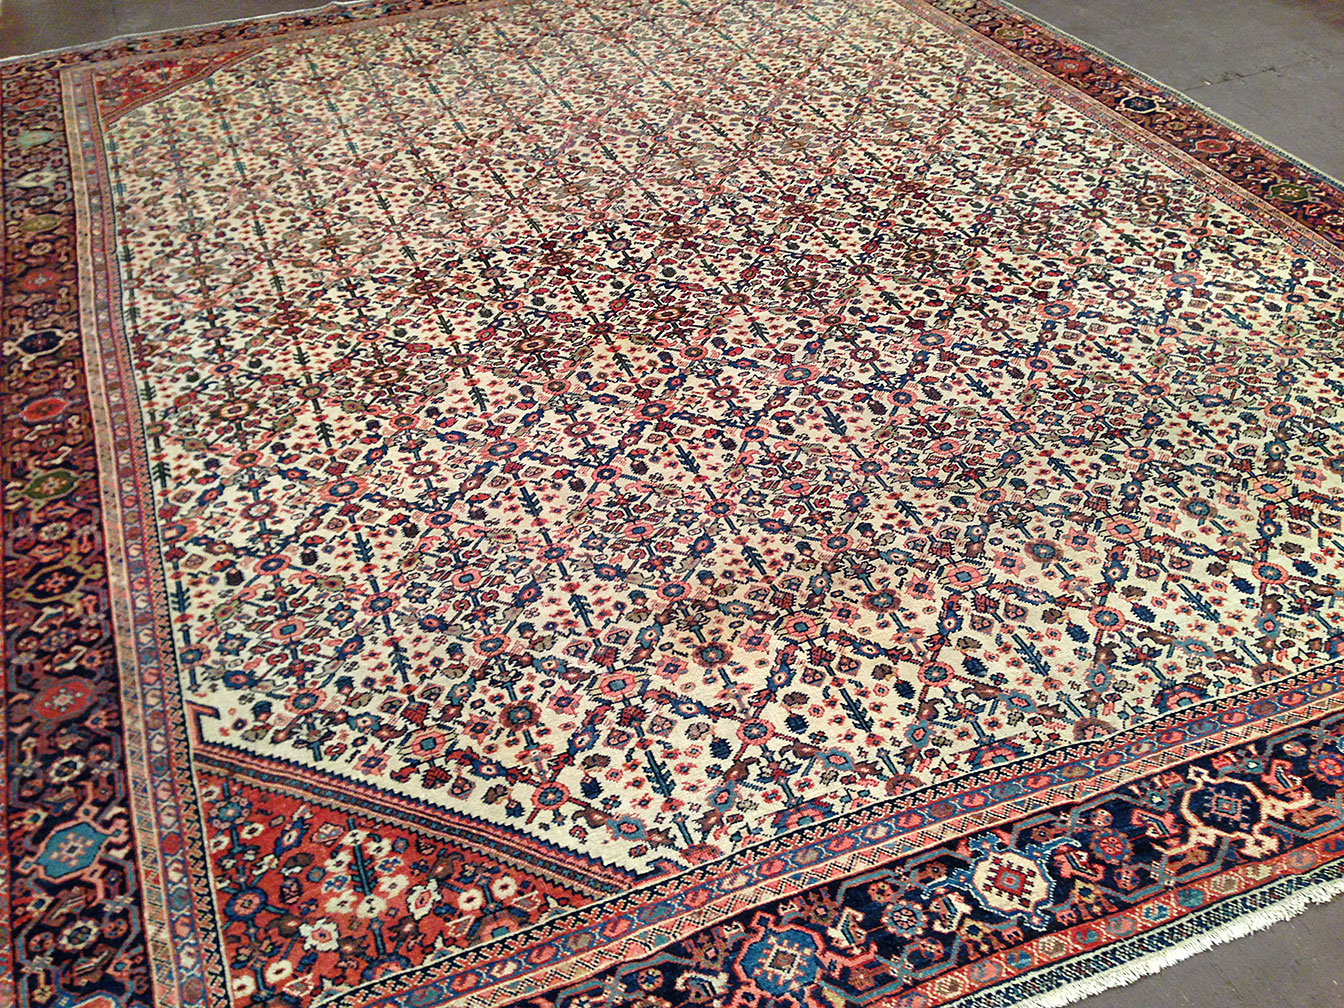 Antique mahal Carpet - # 50737